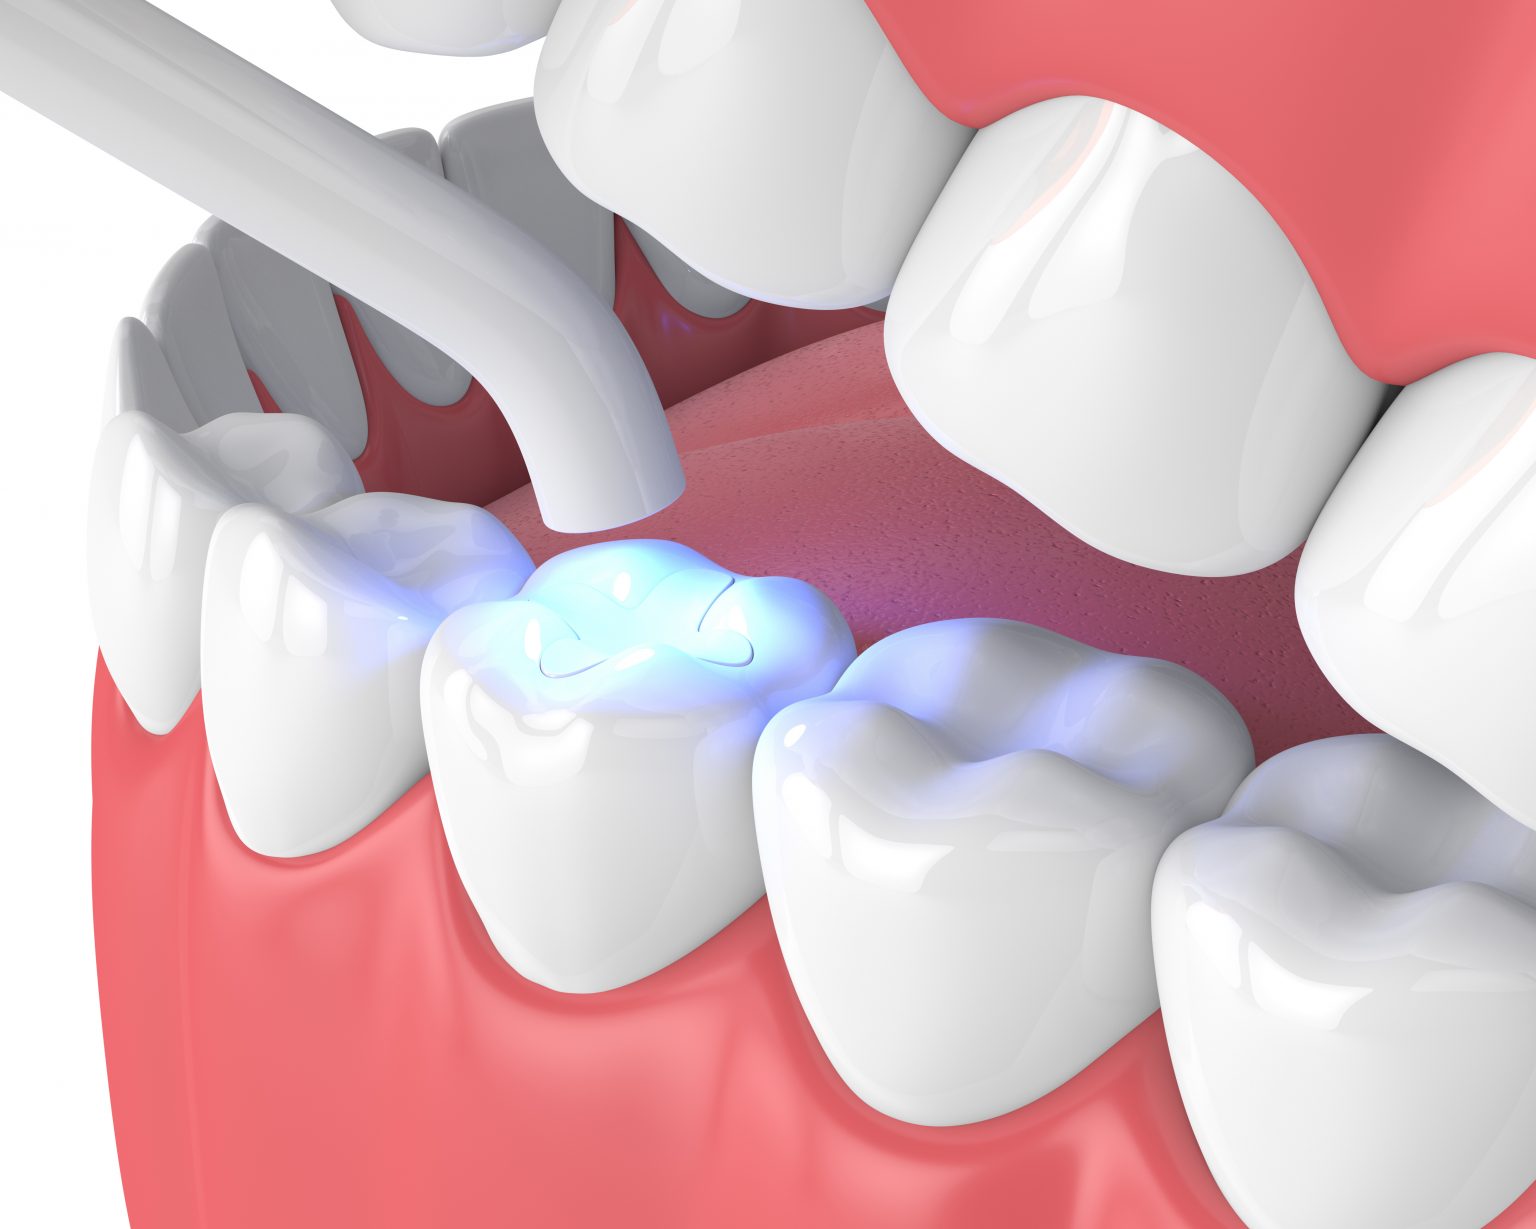 أنواع حشوات الأسنان الدائمة